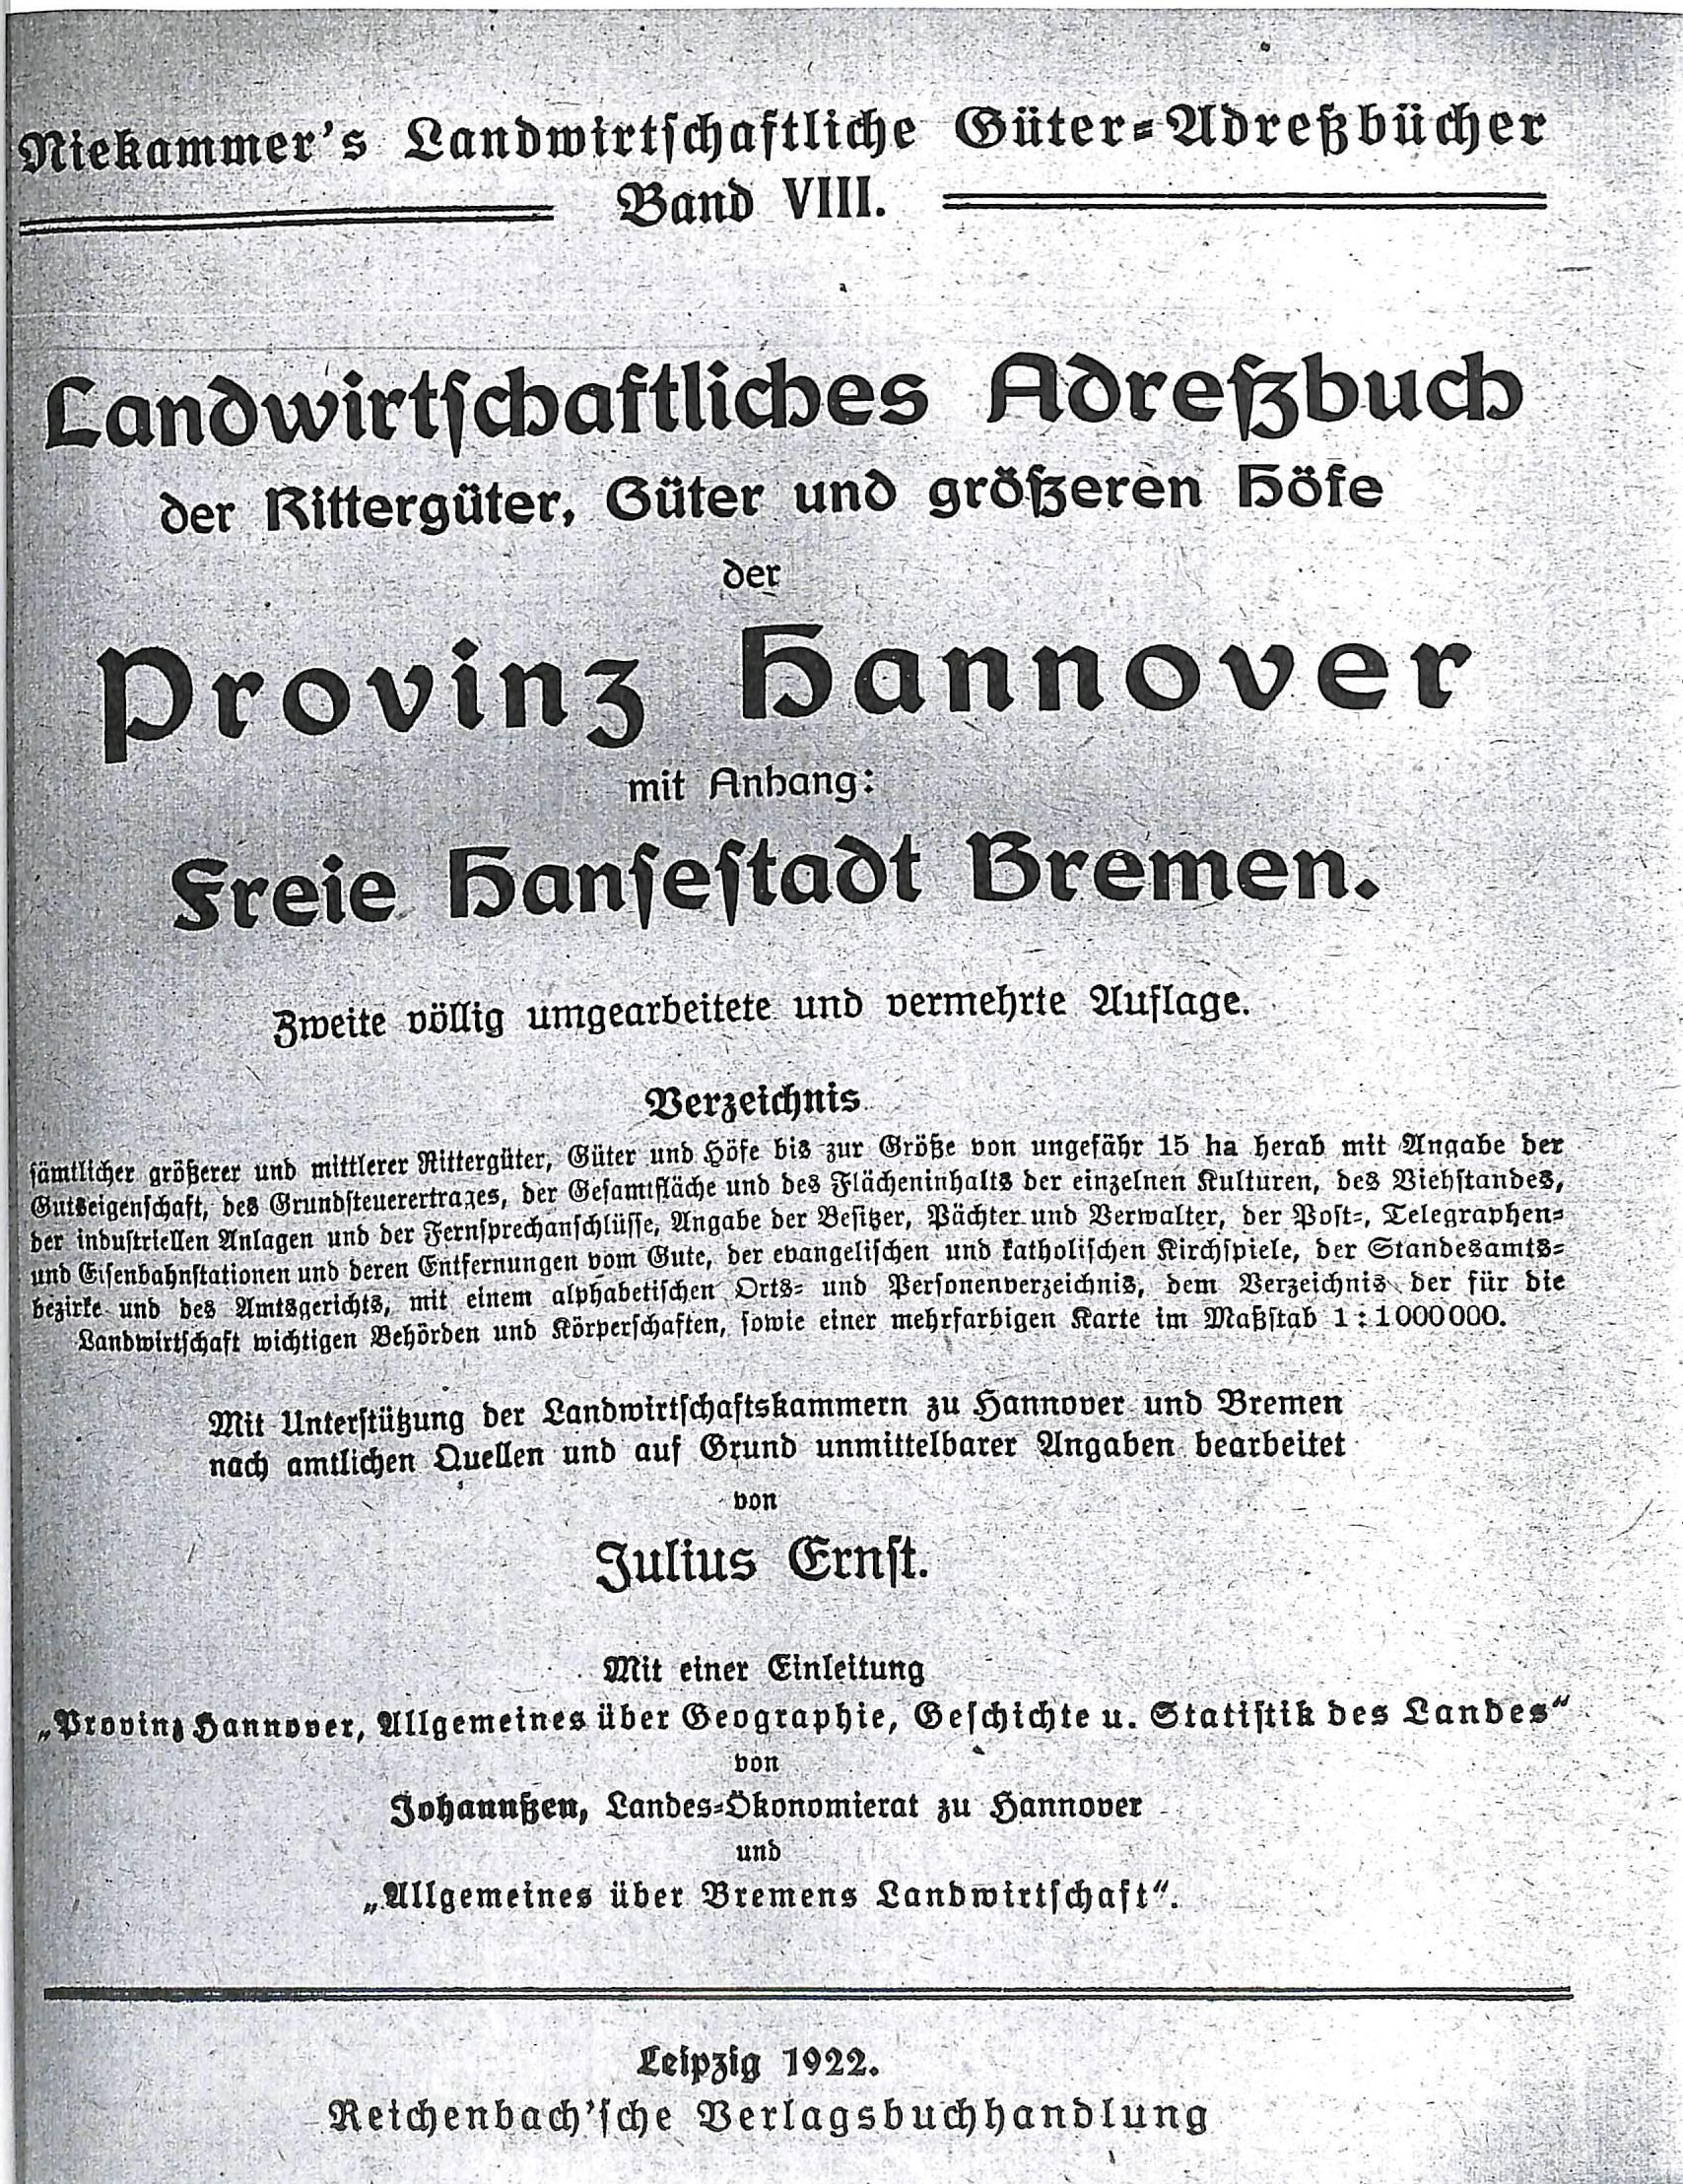 Landwirtschaftliches Adressbuch aus der Provinz Hannover, 1922 (Kreismuseum Syke CC BY-NC-SA)